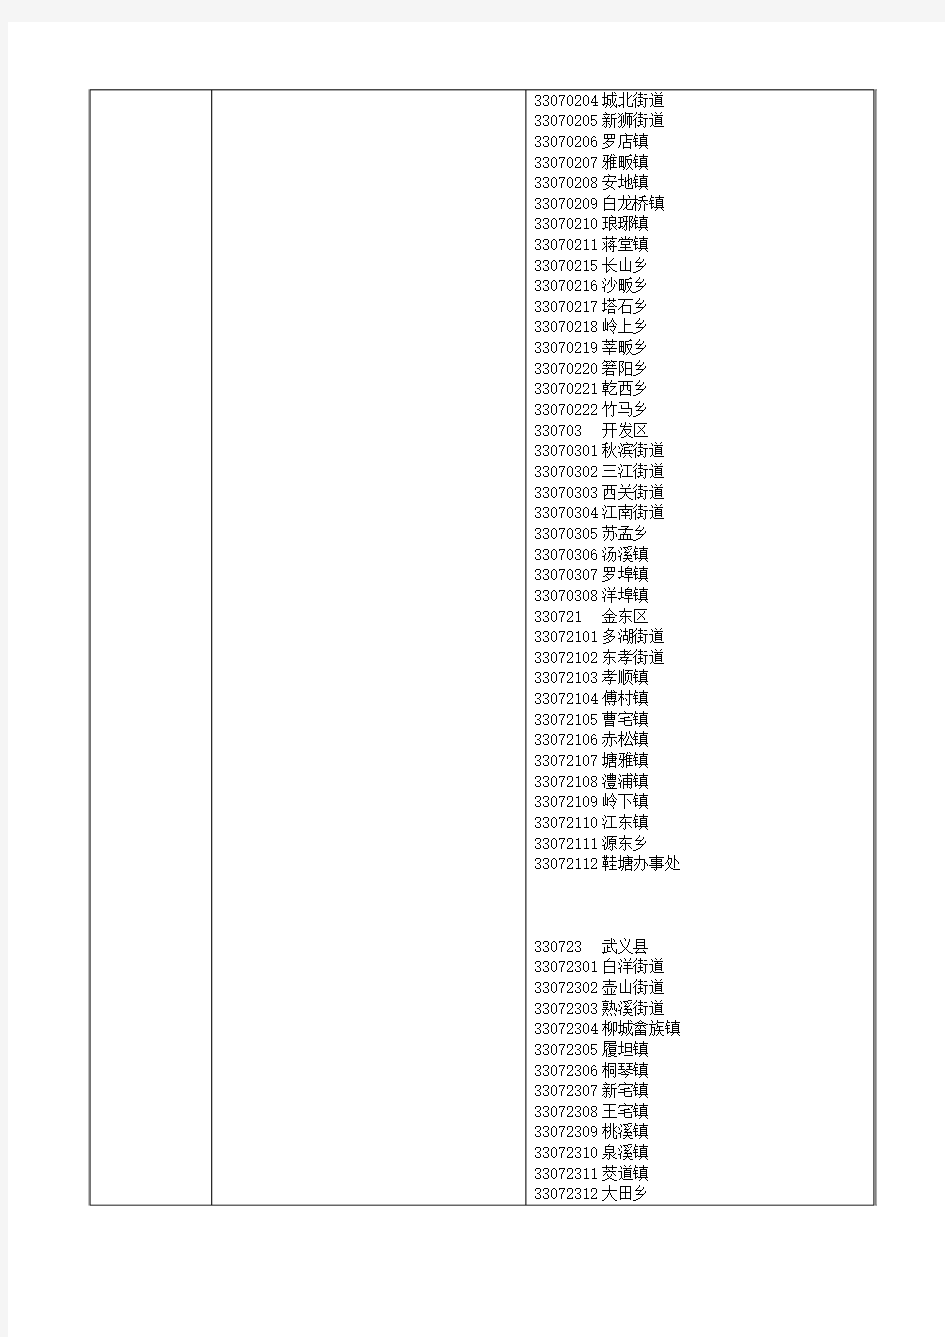 特种设备电梯设备信息主表6表中内容代号含义(1)